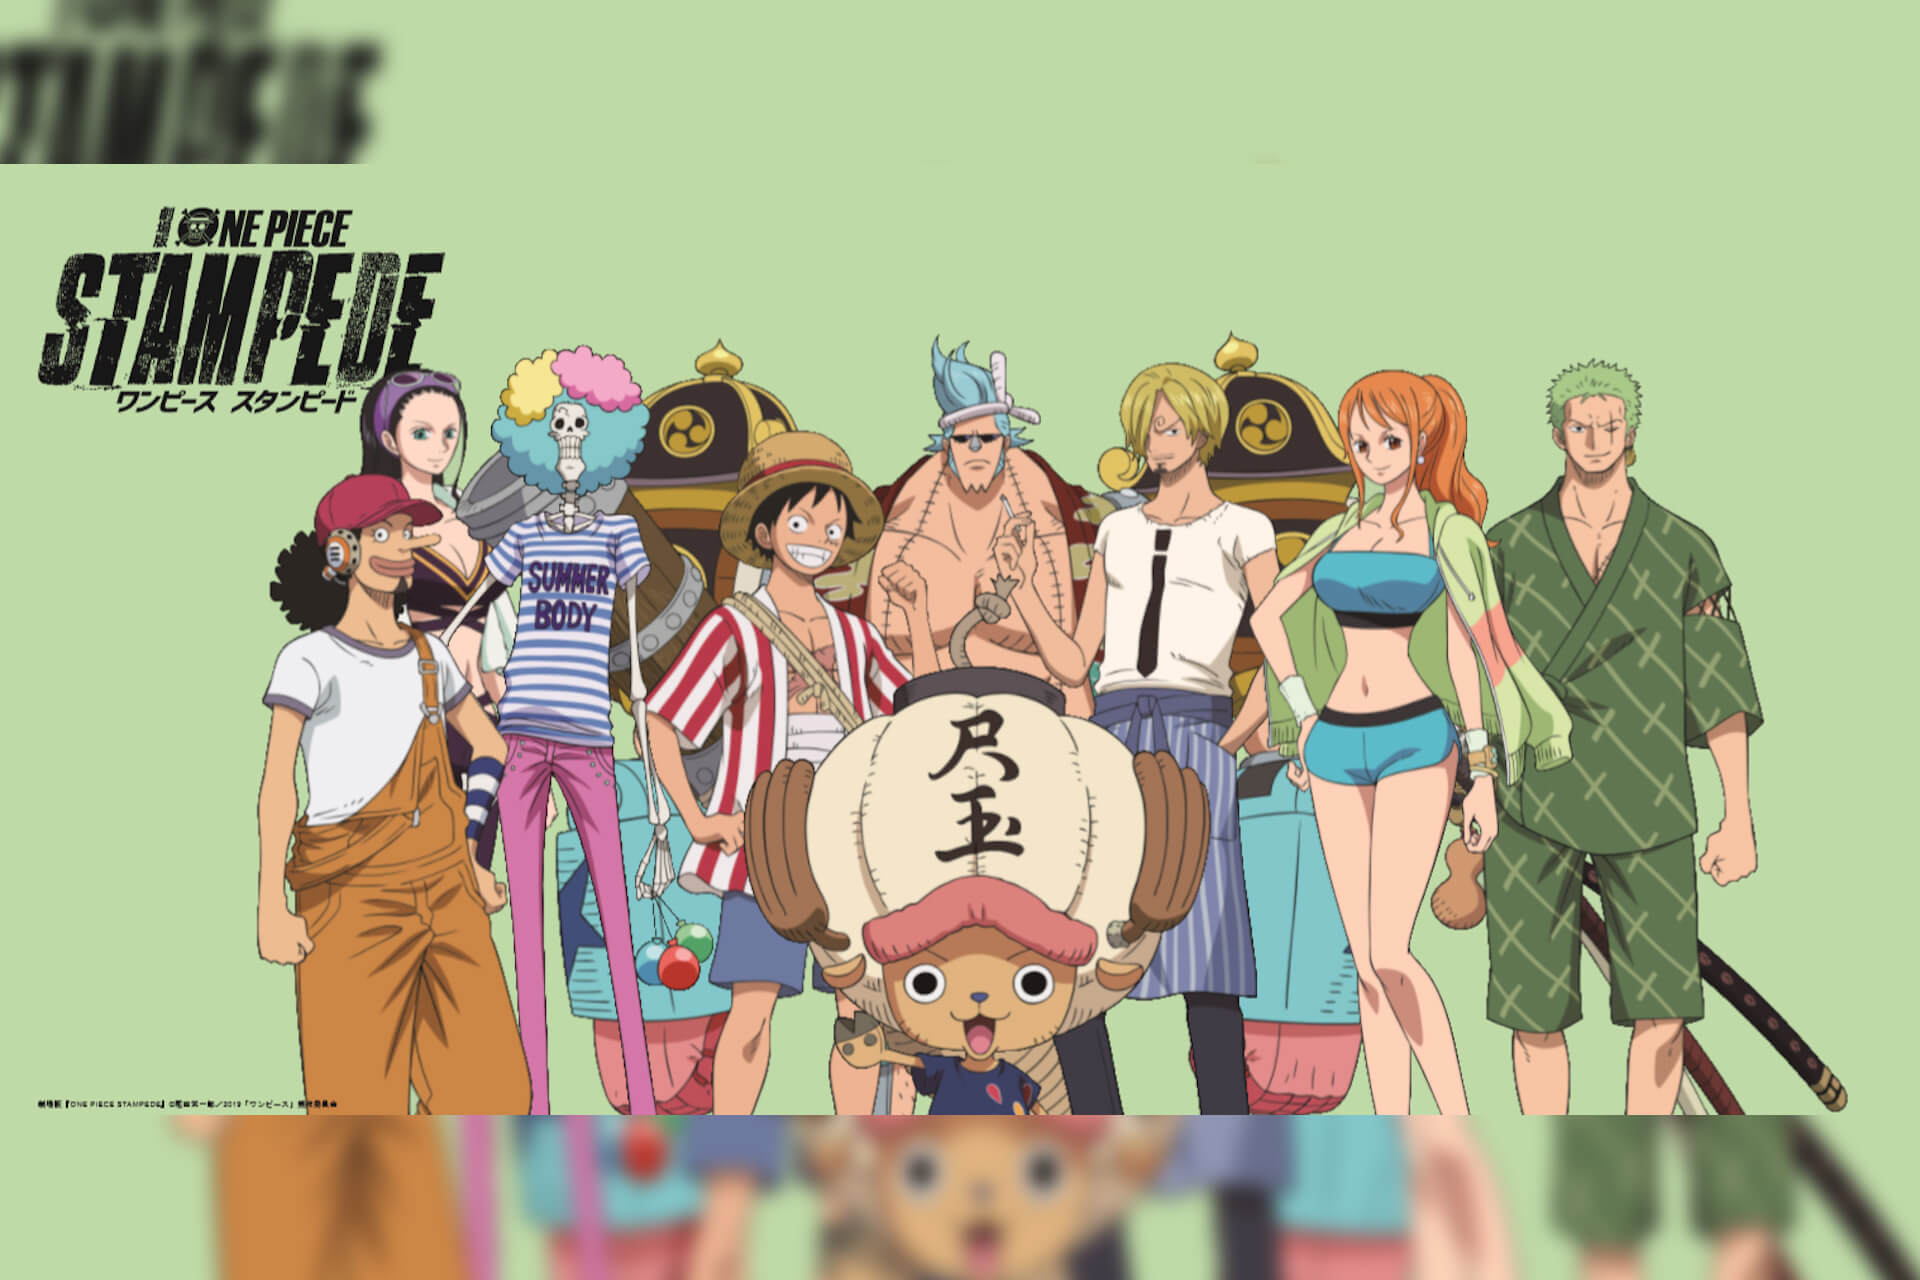 ユニクロとone Pieceの第2弾コラボが実現 Utに One Piece Stampede シリーズが登場 Qetic